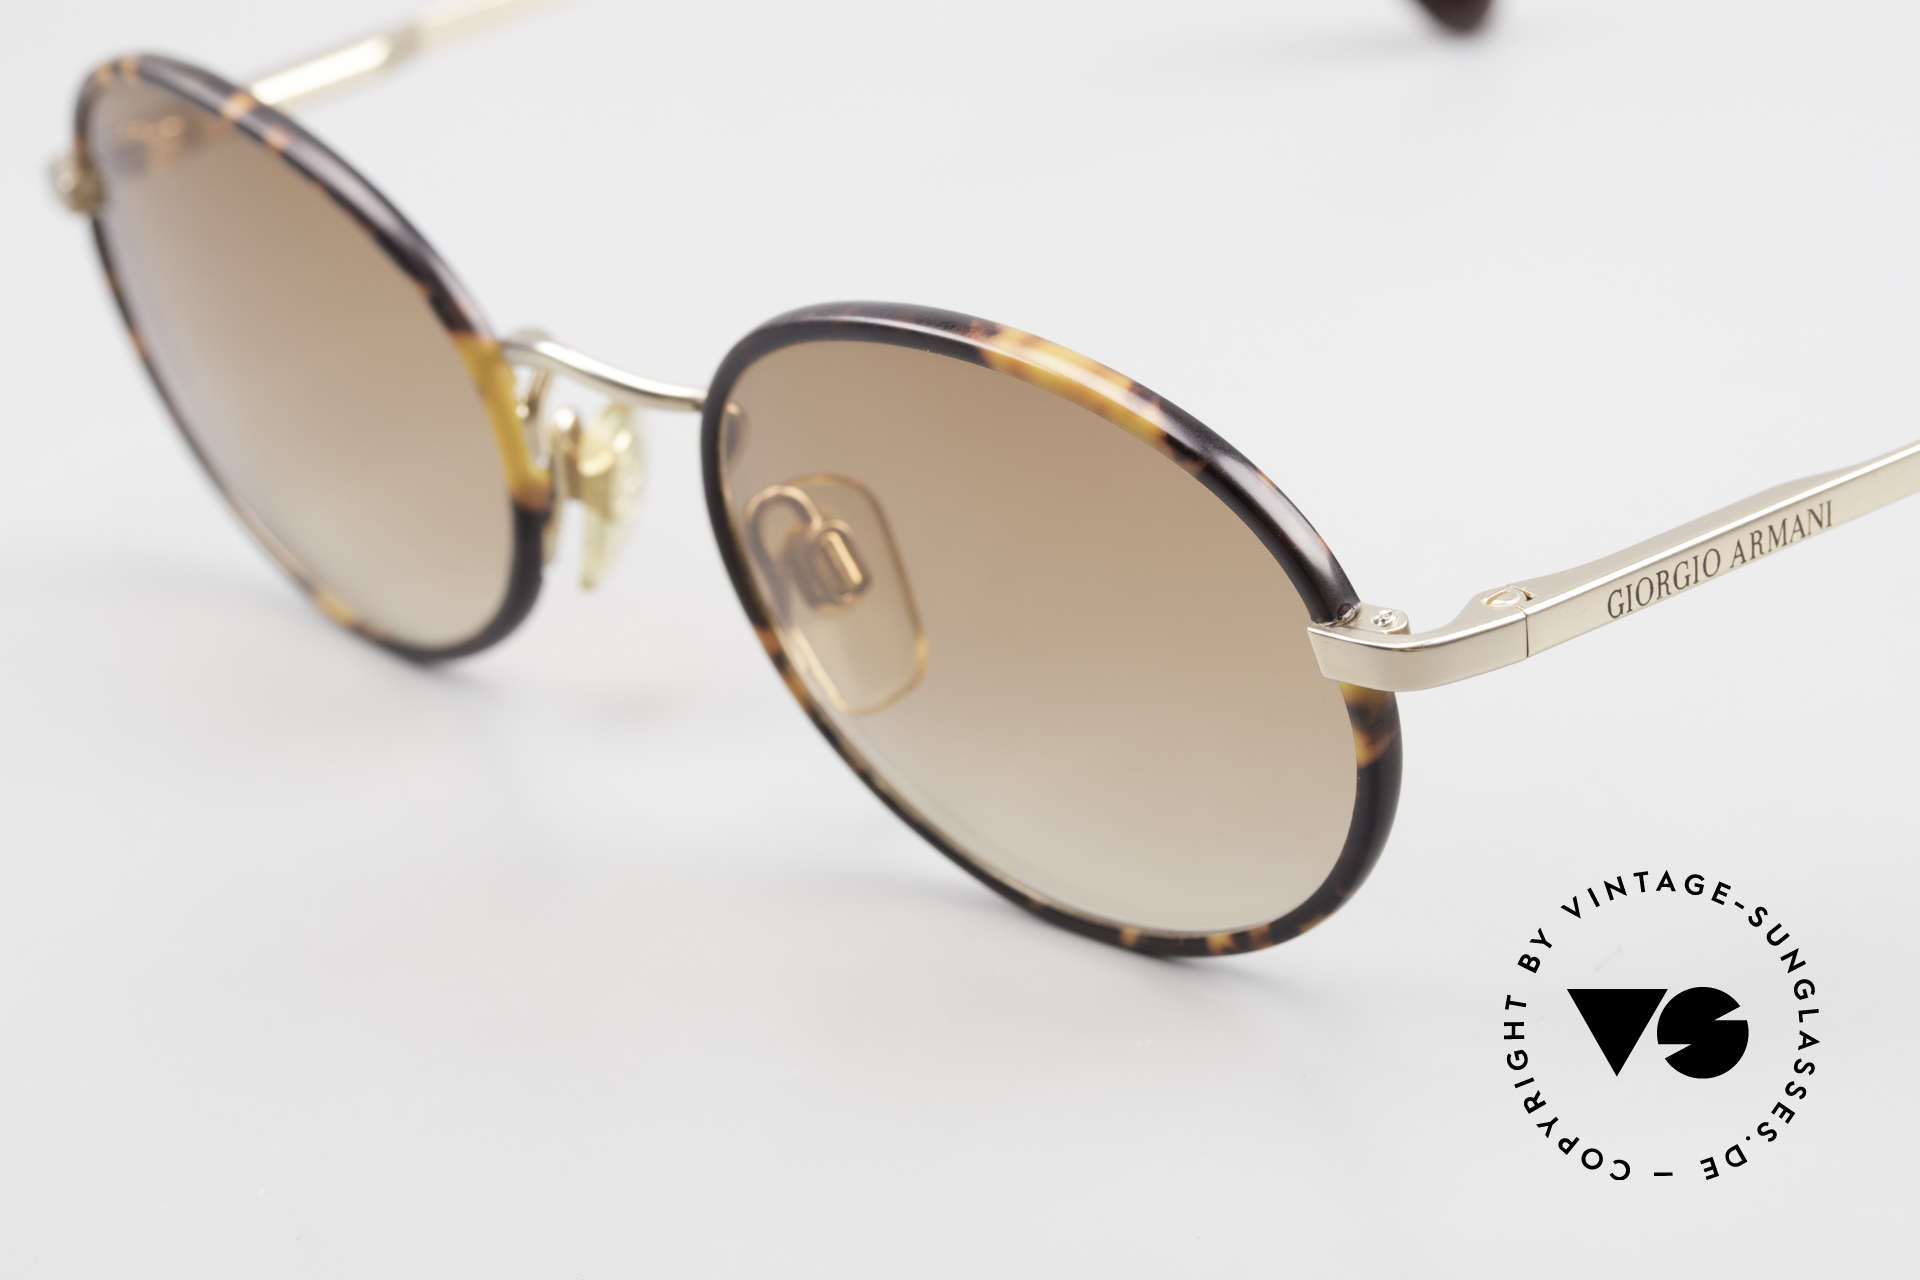 Giorgio Armani 235 Ovale Vintage Sonnenbrille, einfach nur stylisch und in absoluter Spitzen-Qualität, Passend für Herren und Damen